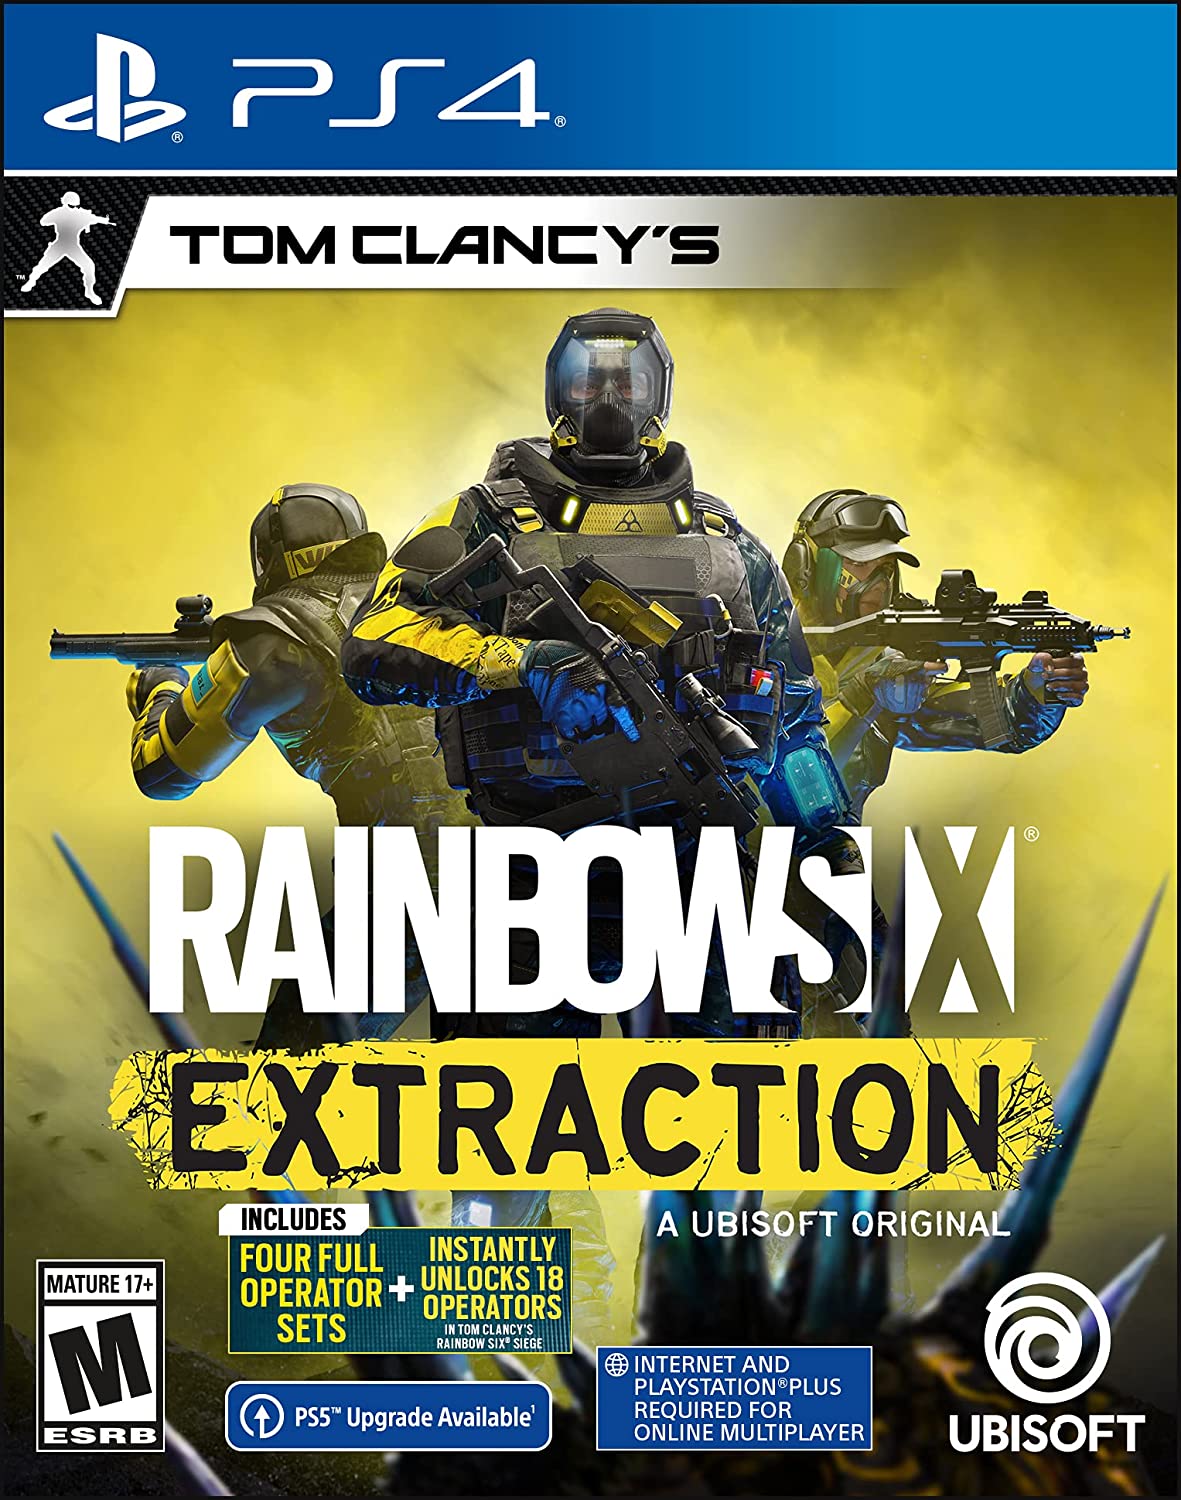 Ubisoft - Tom Clancy's Rainbow Six Siege PS4